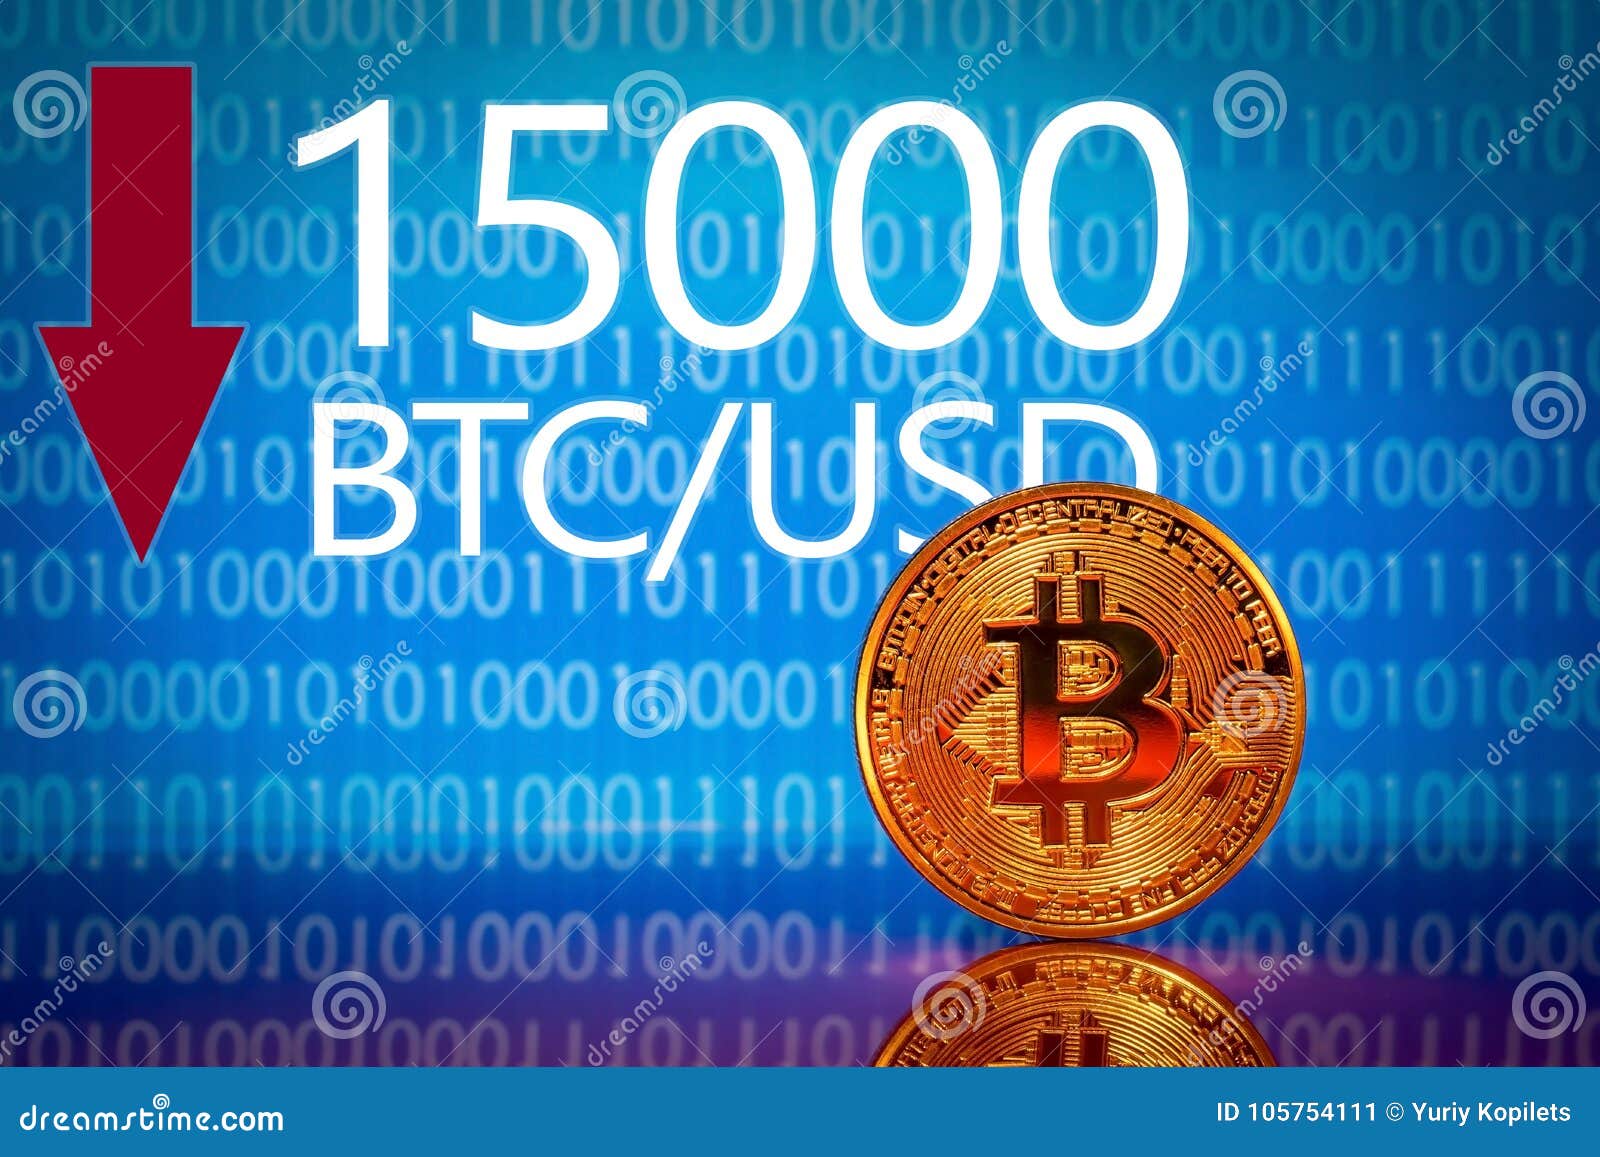 Volatilità di Bitcoin ai massimi annuali, analista prevede un ritorno a 15.000$